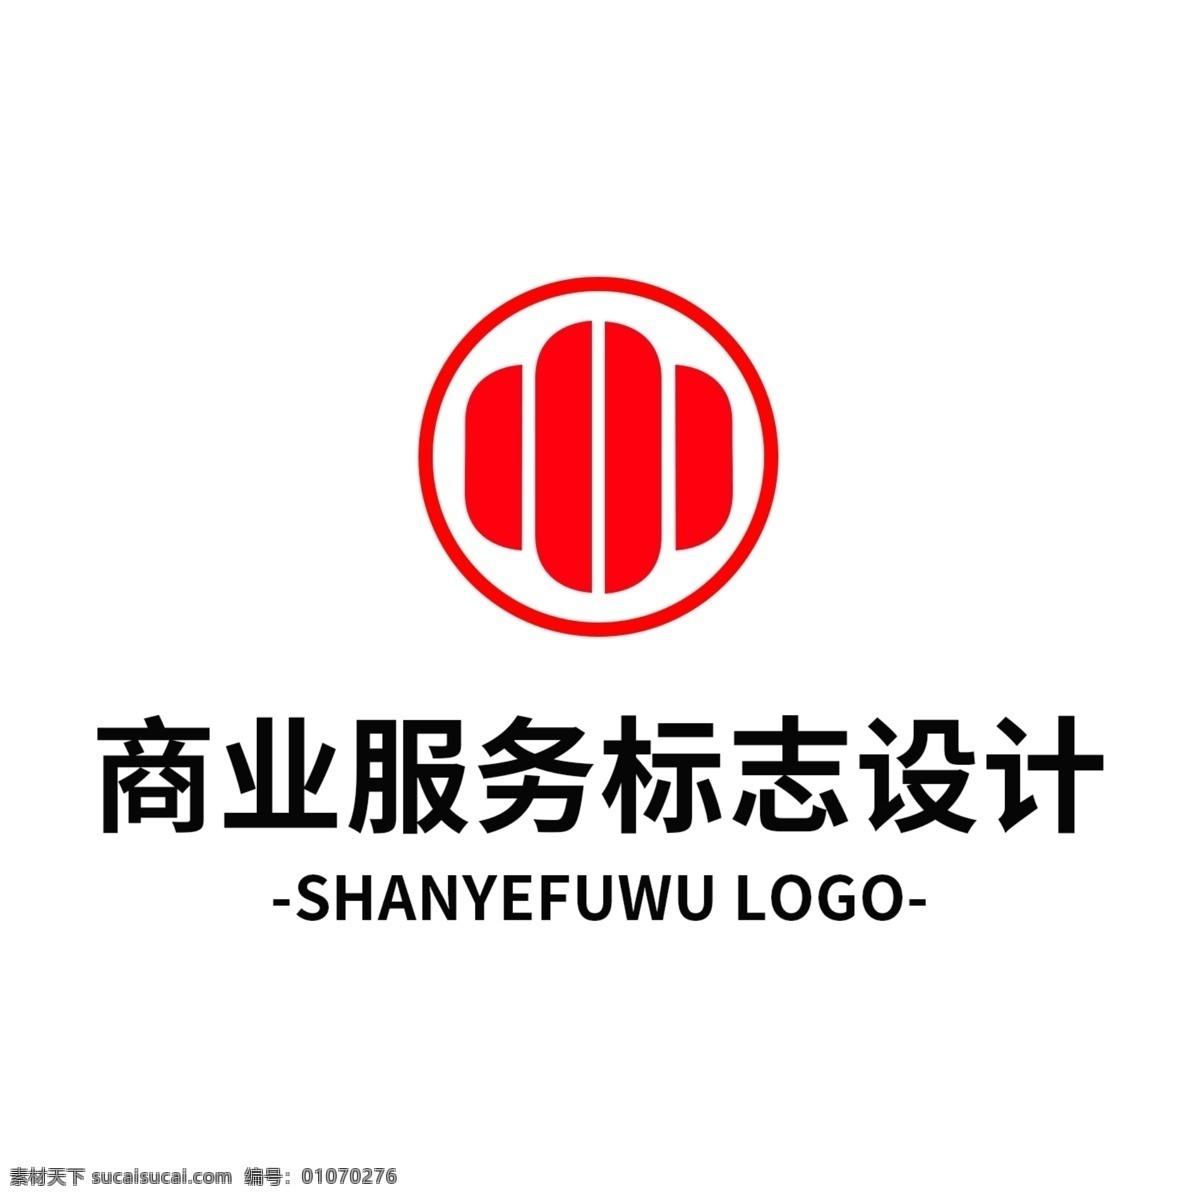 简约 大气 创意 商业服务 标志设计 logo 标识 行业标志 商业 服务